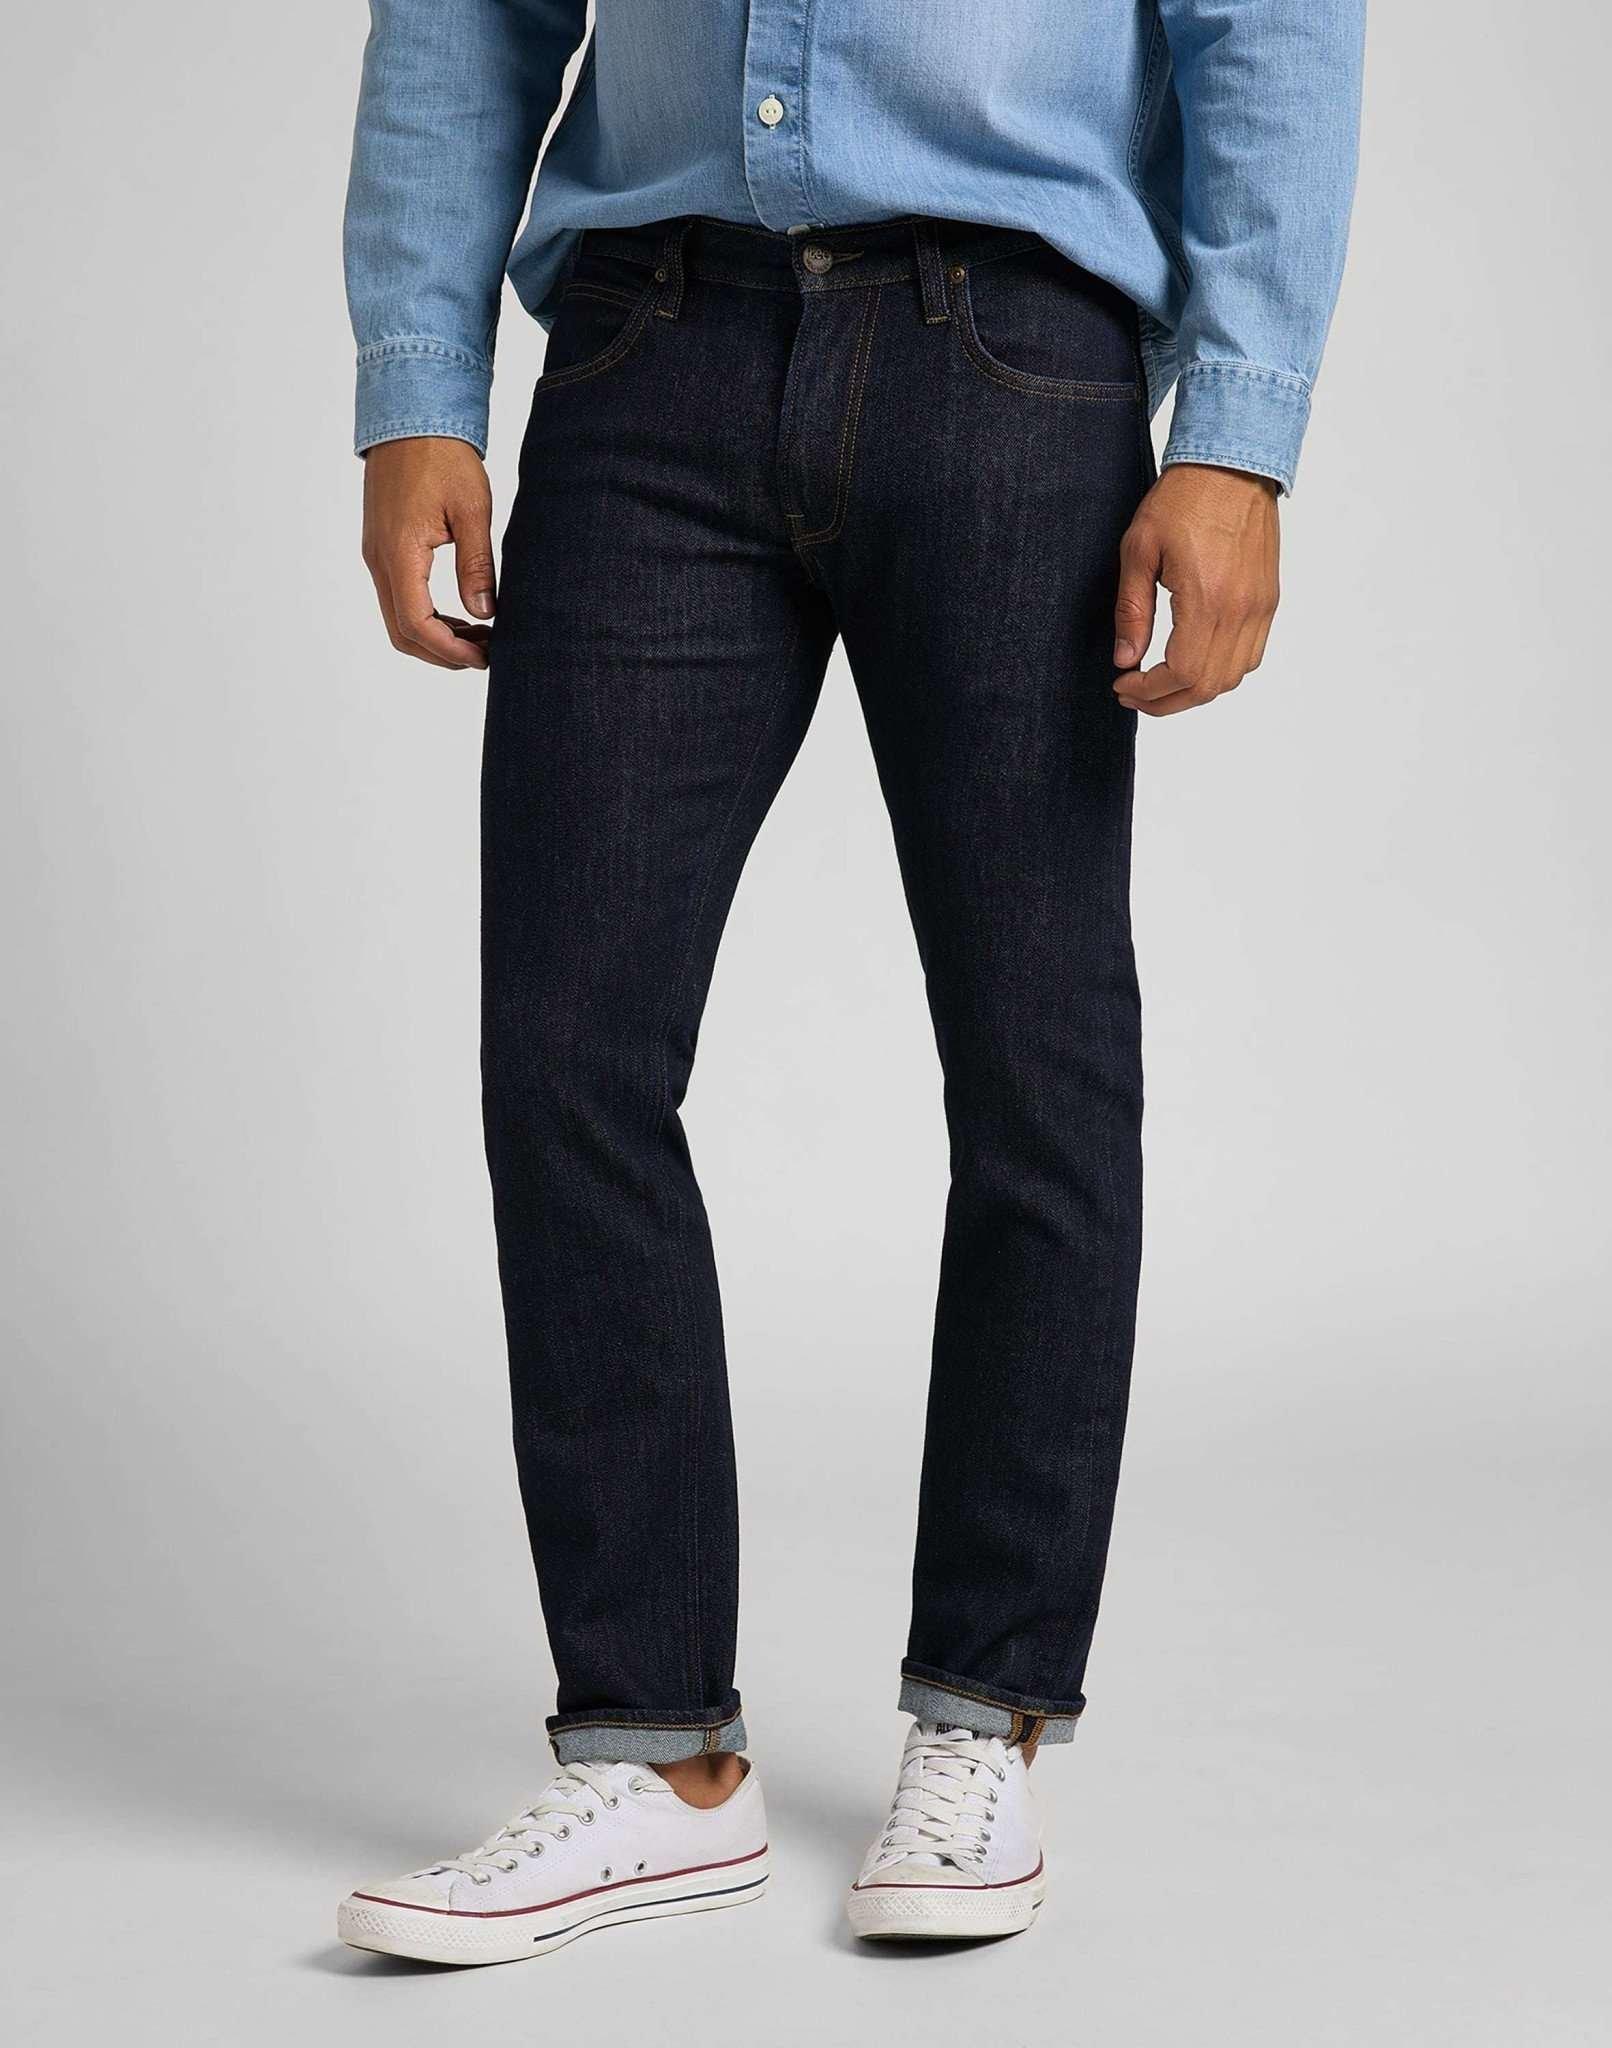 Jeans Straight Leg Daren Herren Blau Denim L32/W36 von Lee